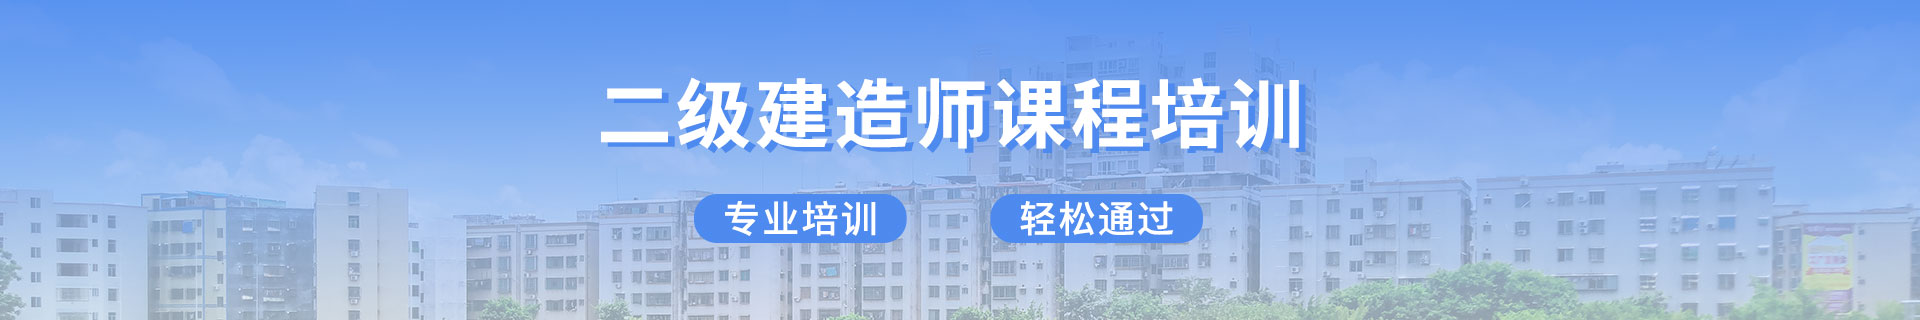 江西九江优路教育培训学校